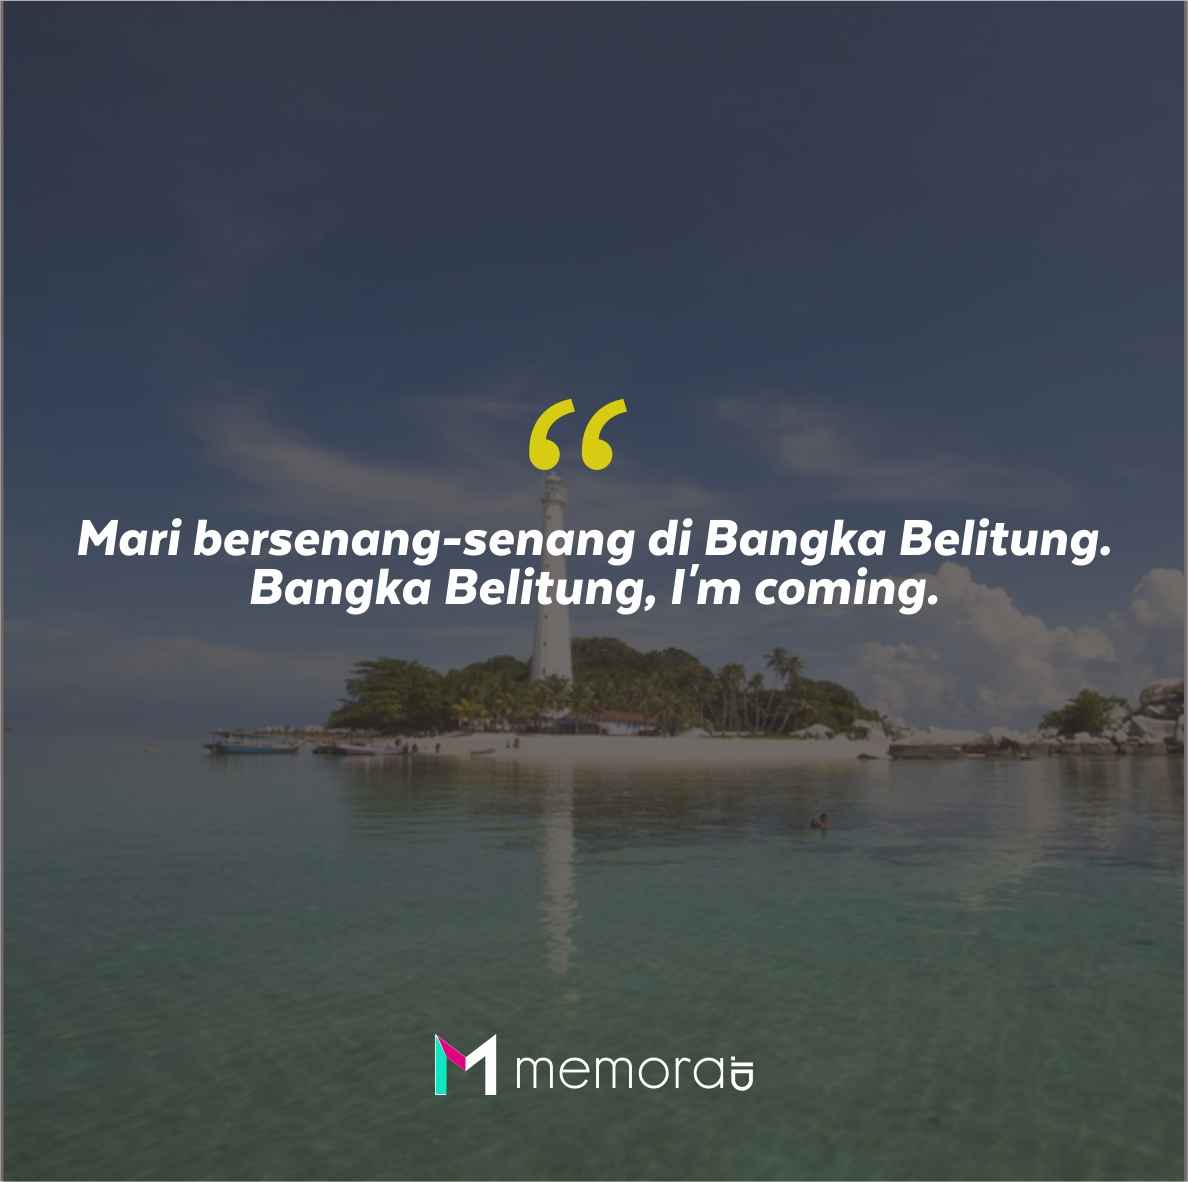 Quotes Aesthetic Tentang Bangka Belitung dan Kata-Kata Mutiara Liburan di Bangka Belitung